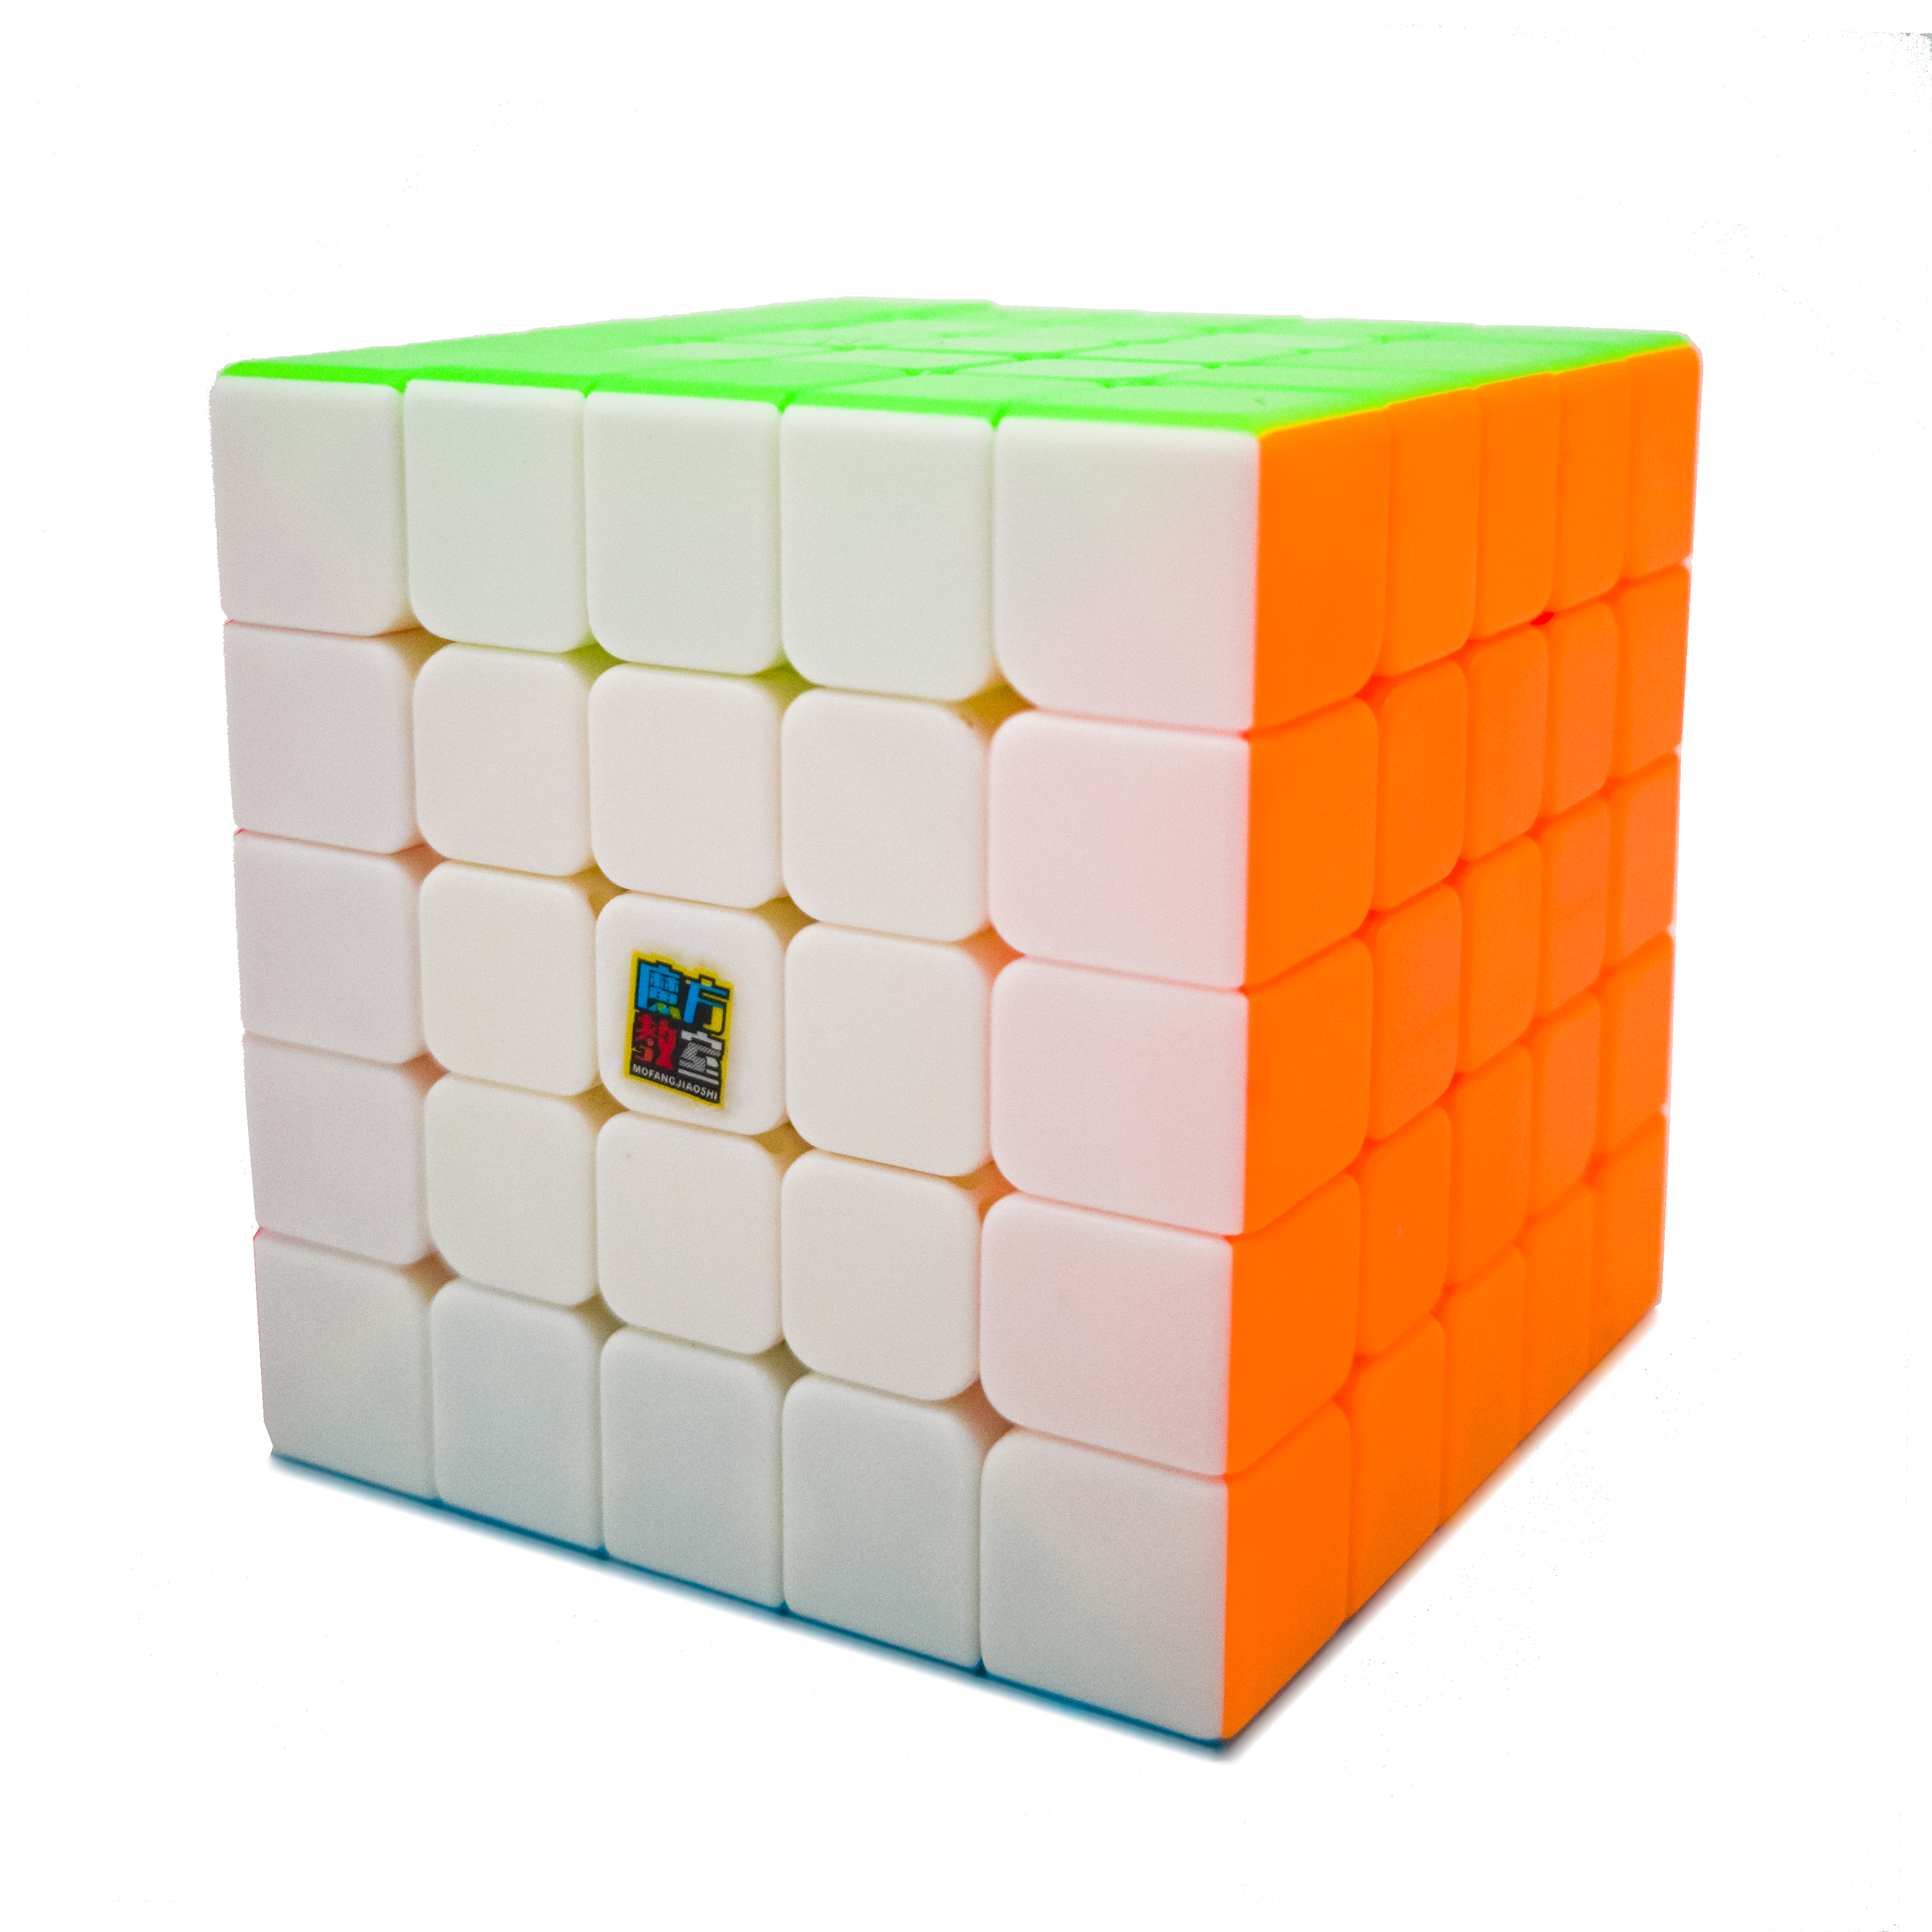 MoFang JiaoShi MeiLong 5x5 - CuberSpace